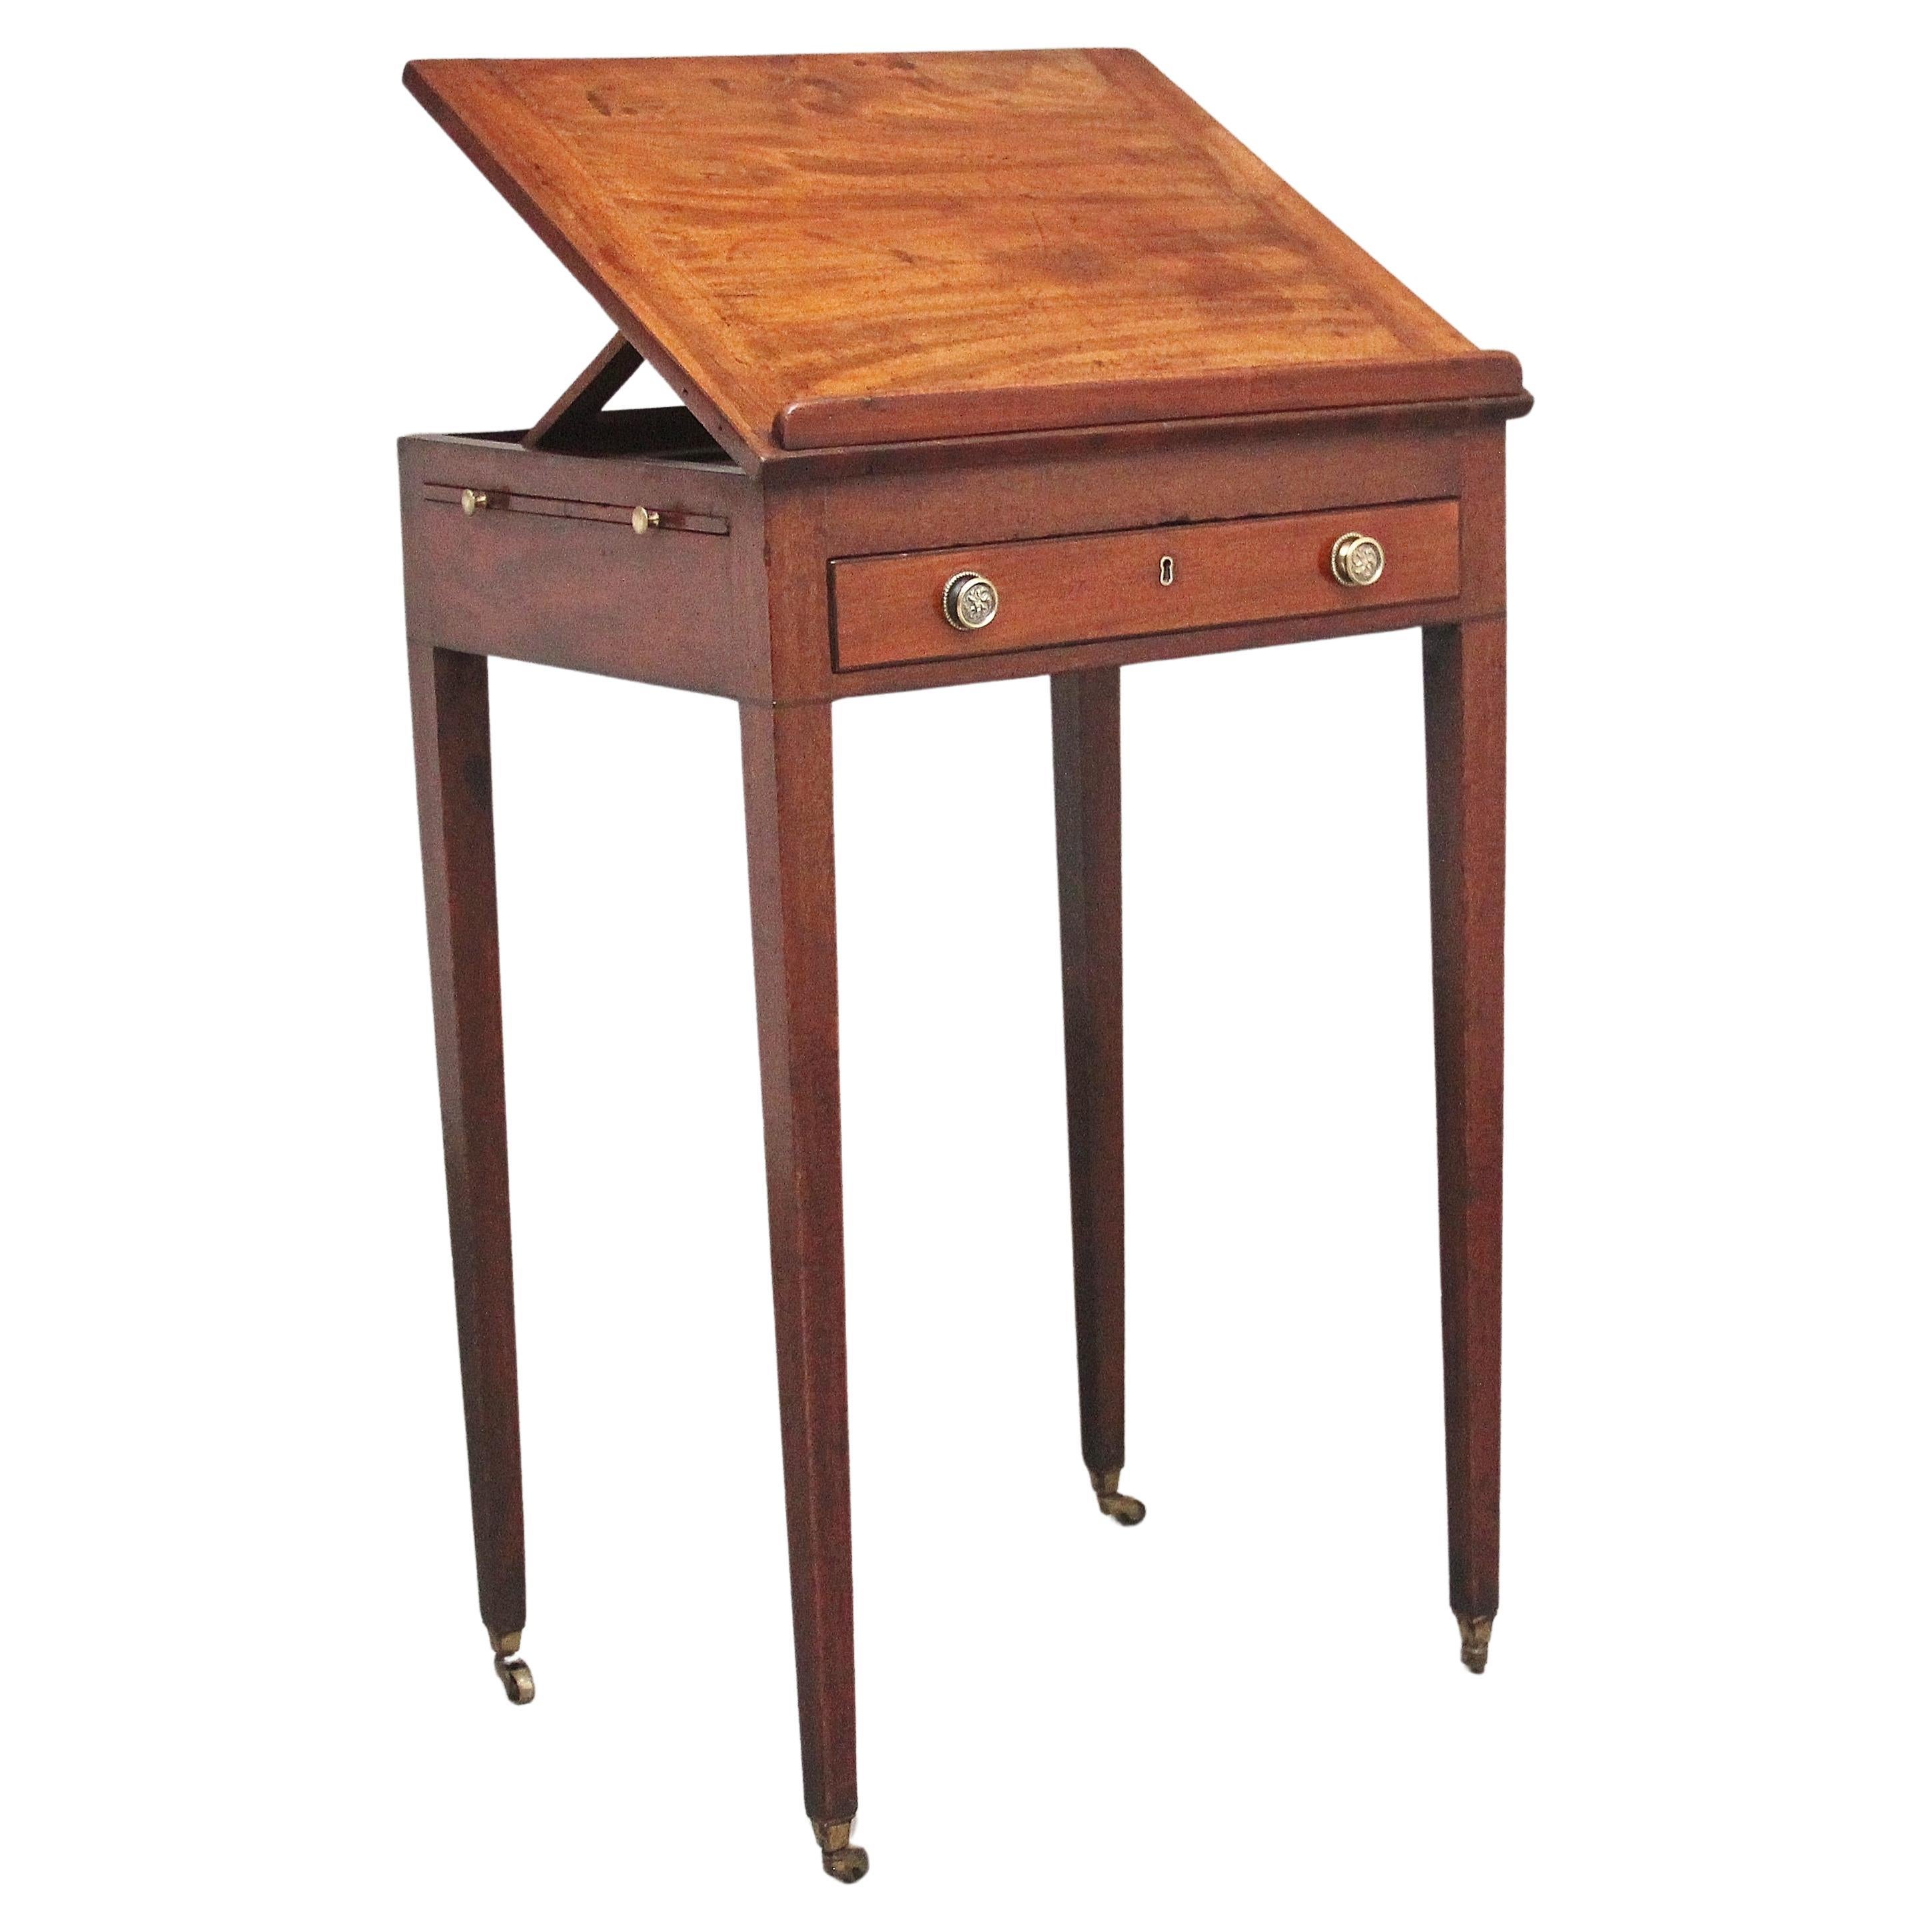 Early 19th Century mahogany reading table